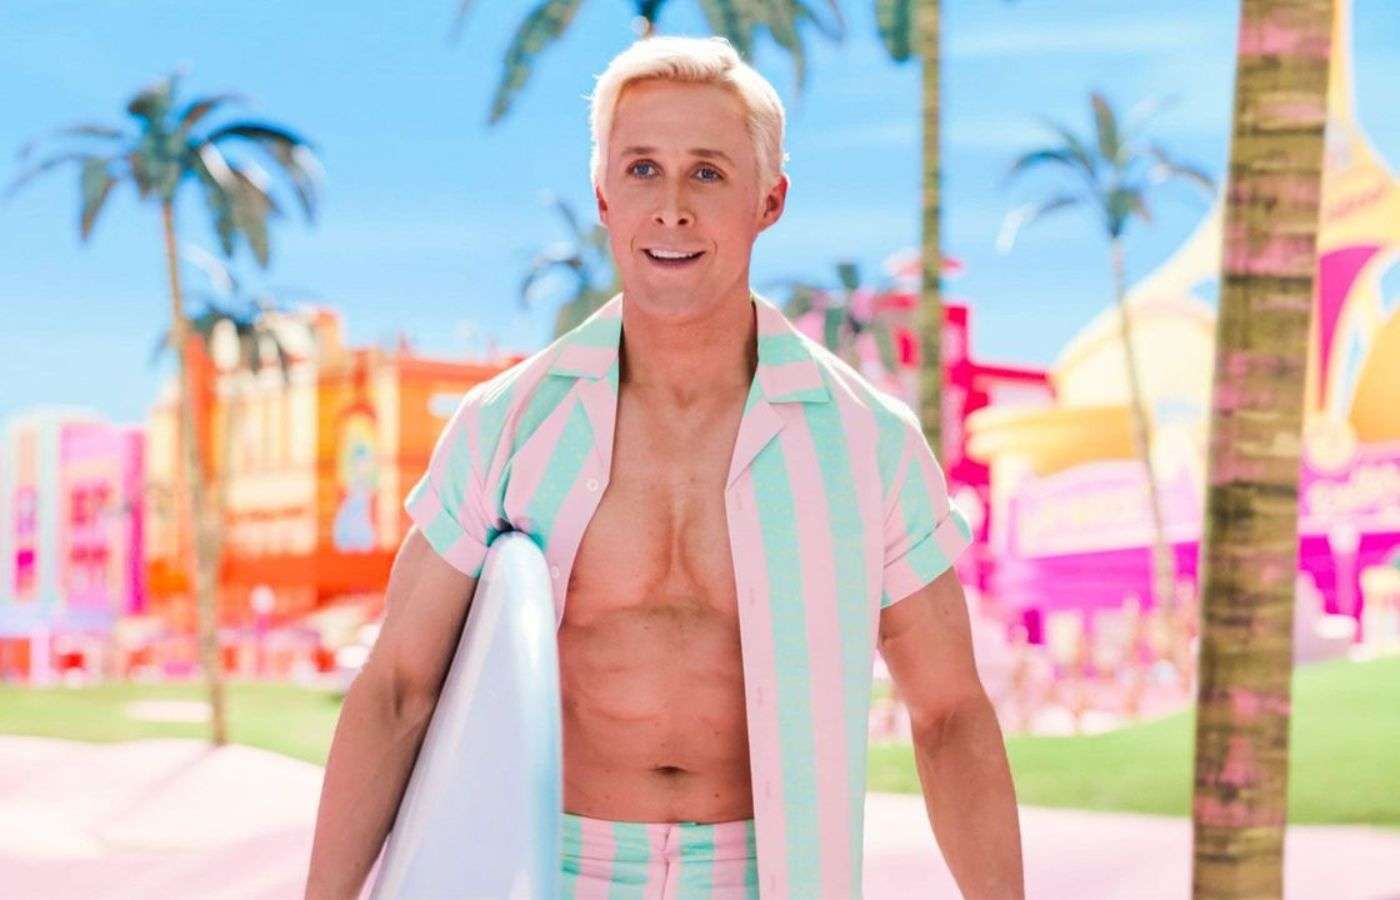 Ryan Gosling's reaction to 'I'm Just Ken' award win goes viral - Dexerto